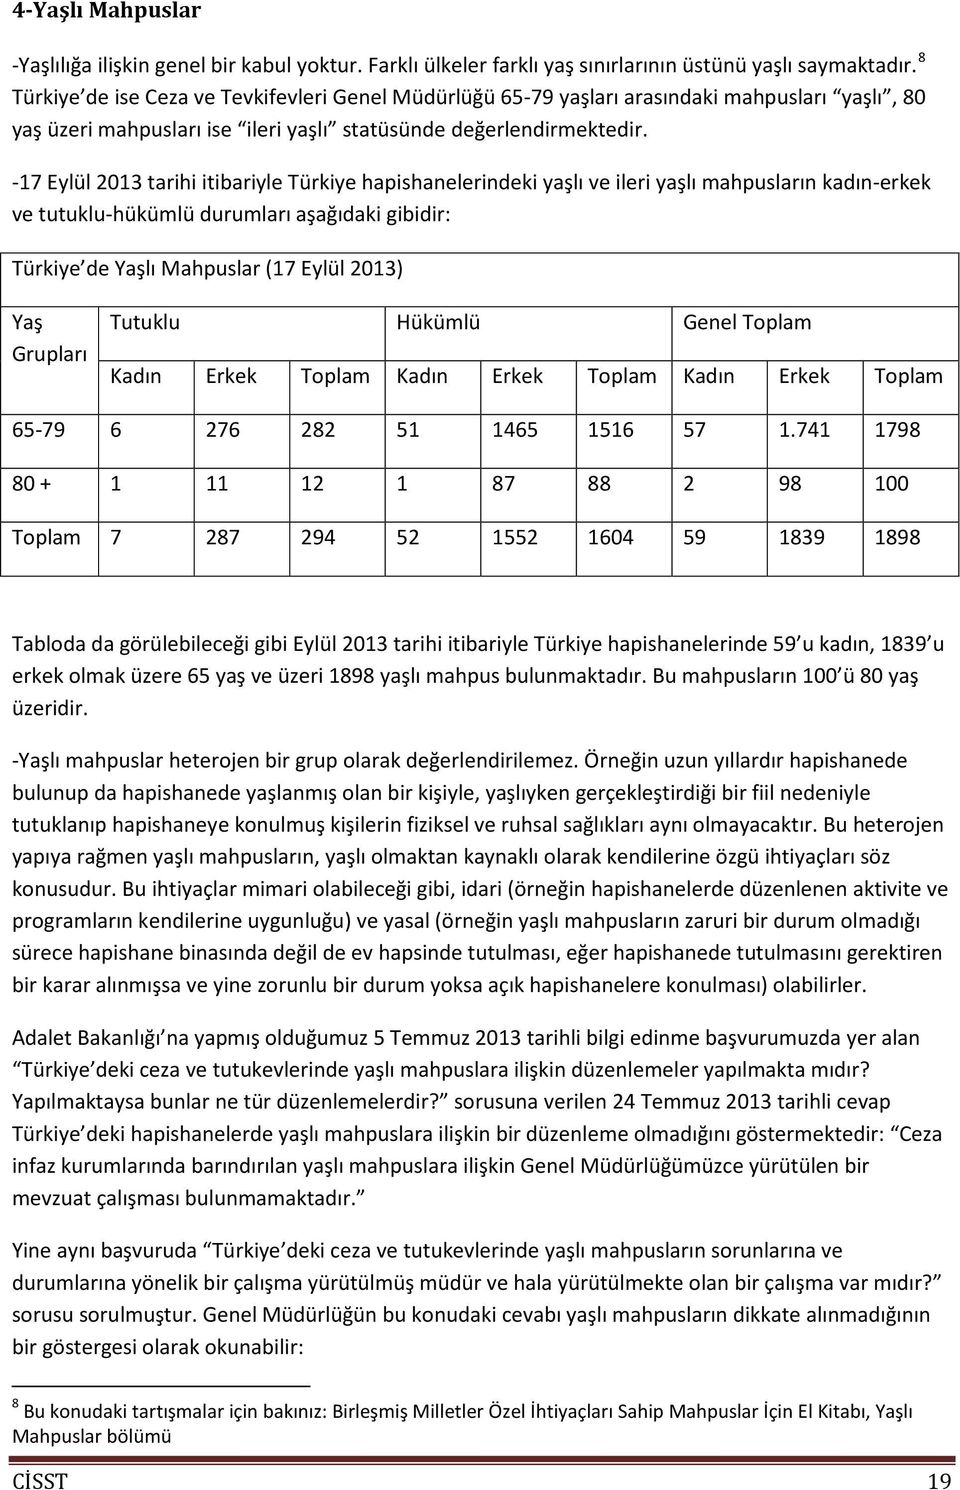 -17 Eylül 2013 tarihi itibariyle Türkiye hapishanelerindeki yaşlı ve ileri yaşlı mahpusların kadın-erkek ve tutuklu-hükümlü durumları aşağıdaki gibidir: Türkiye de Yaşlı Mahpuslar (17 Eylül 2013) Yaş